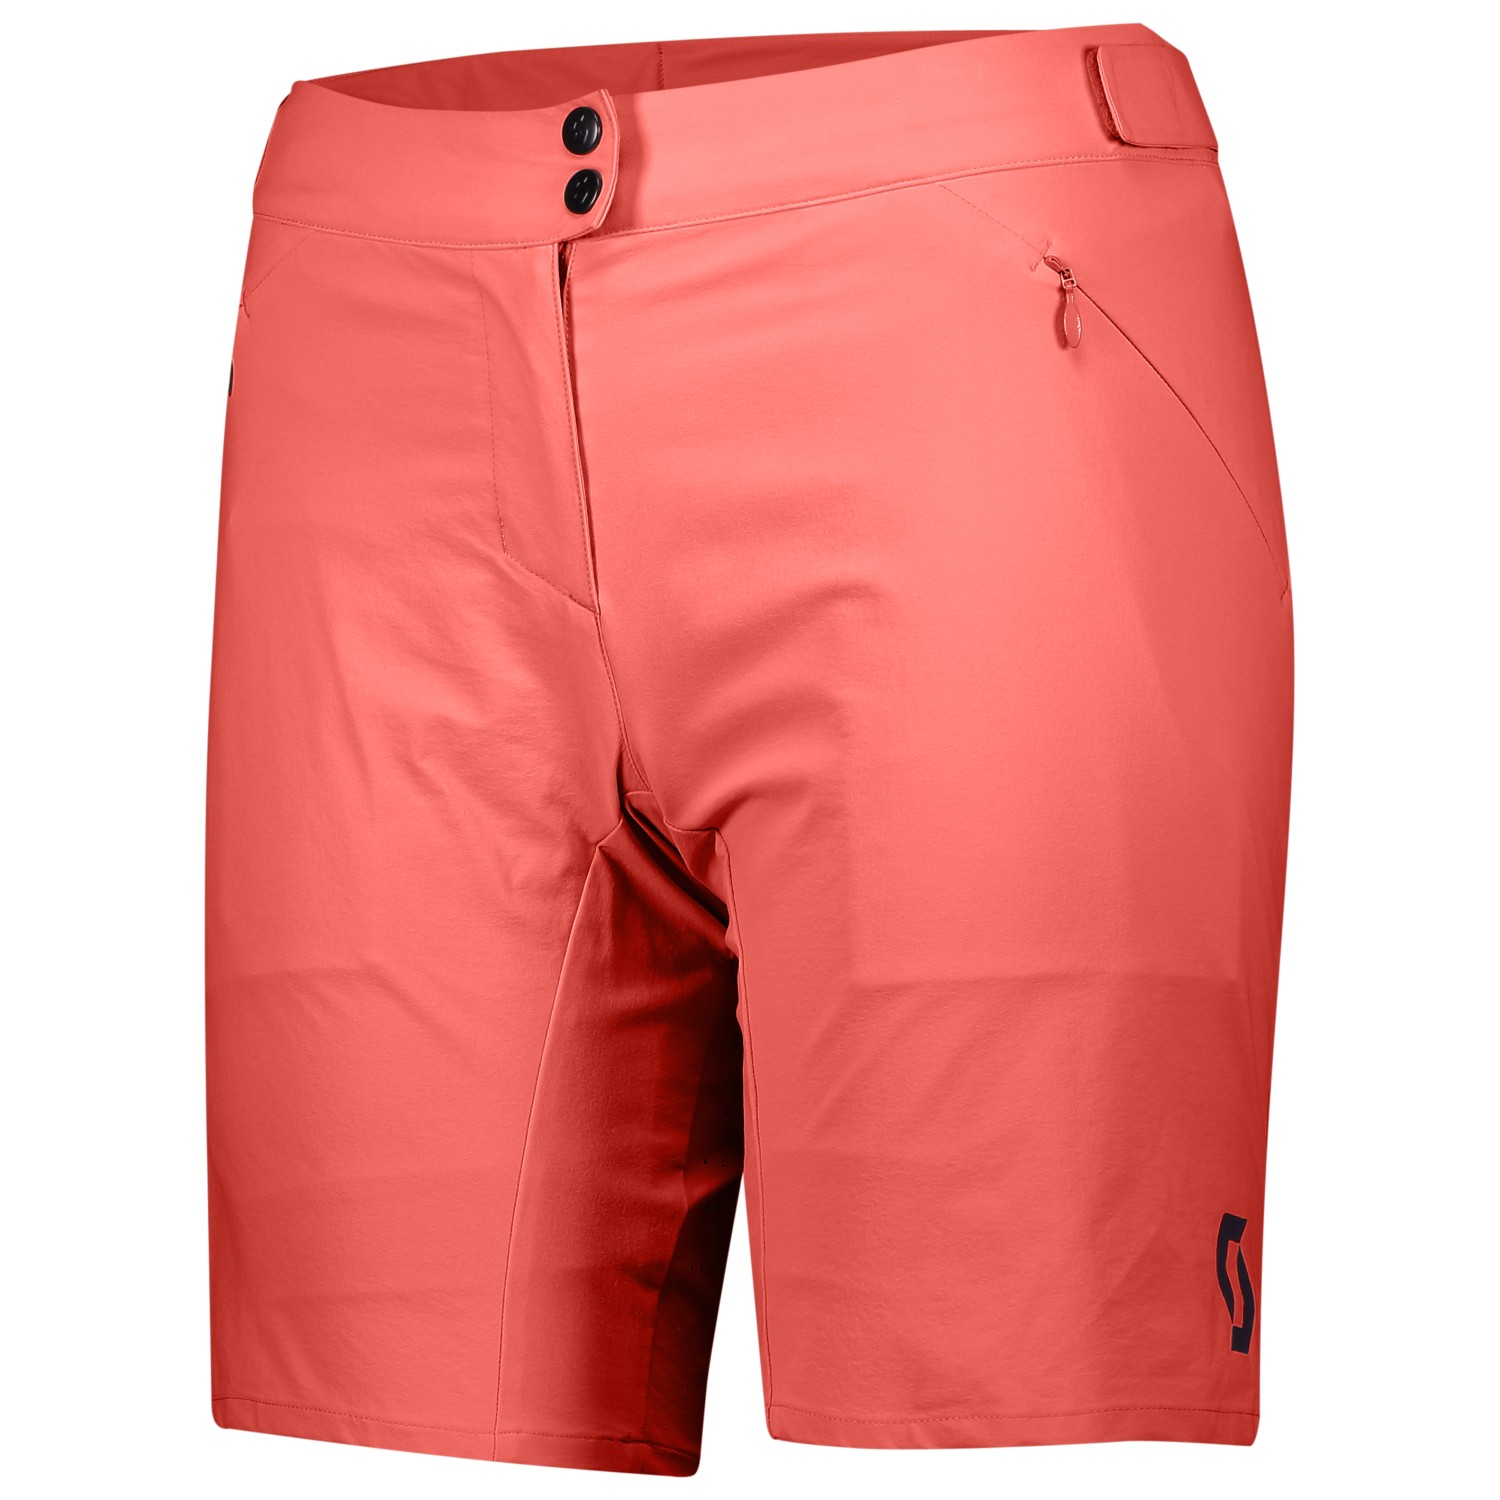 Велосипедные шорты Scott Women's Shorts Endurance Loose Fit with Pad, цвет Astro Red роман коновалов тропинки памяти образы мысли чувства…